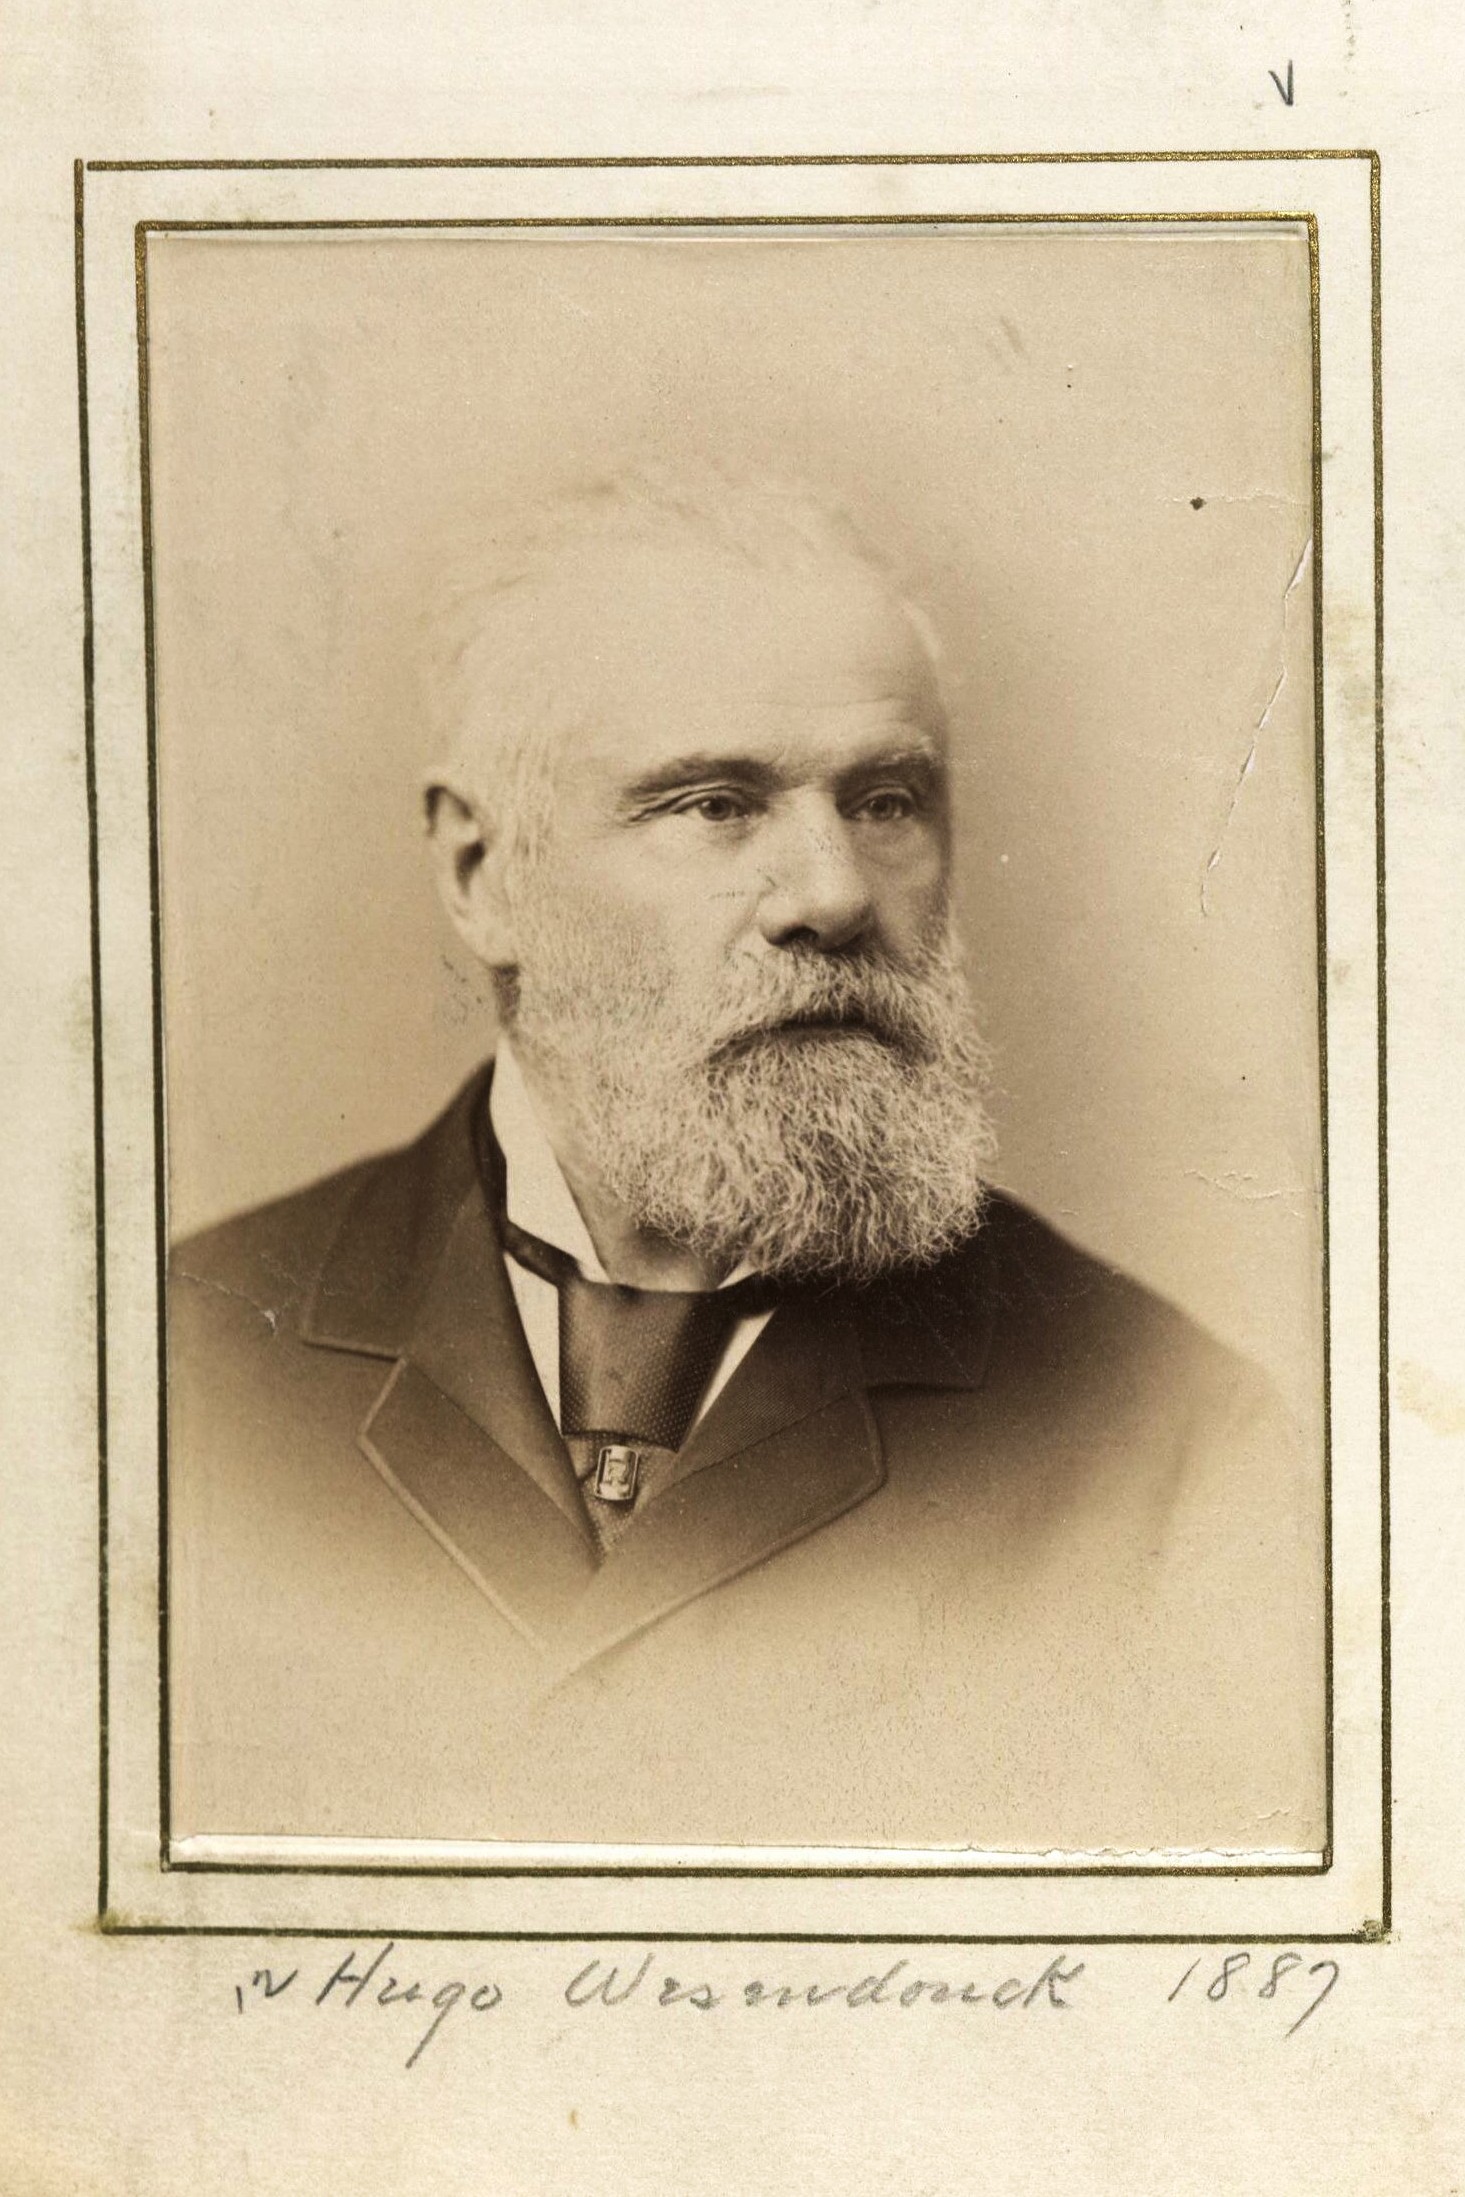 Member portrait of Hugo Wesendonck